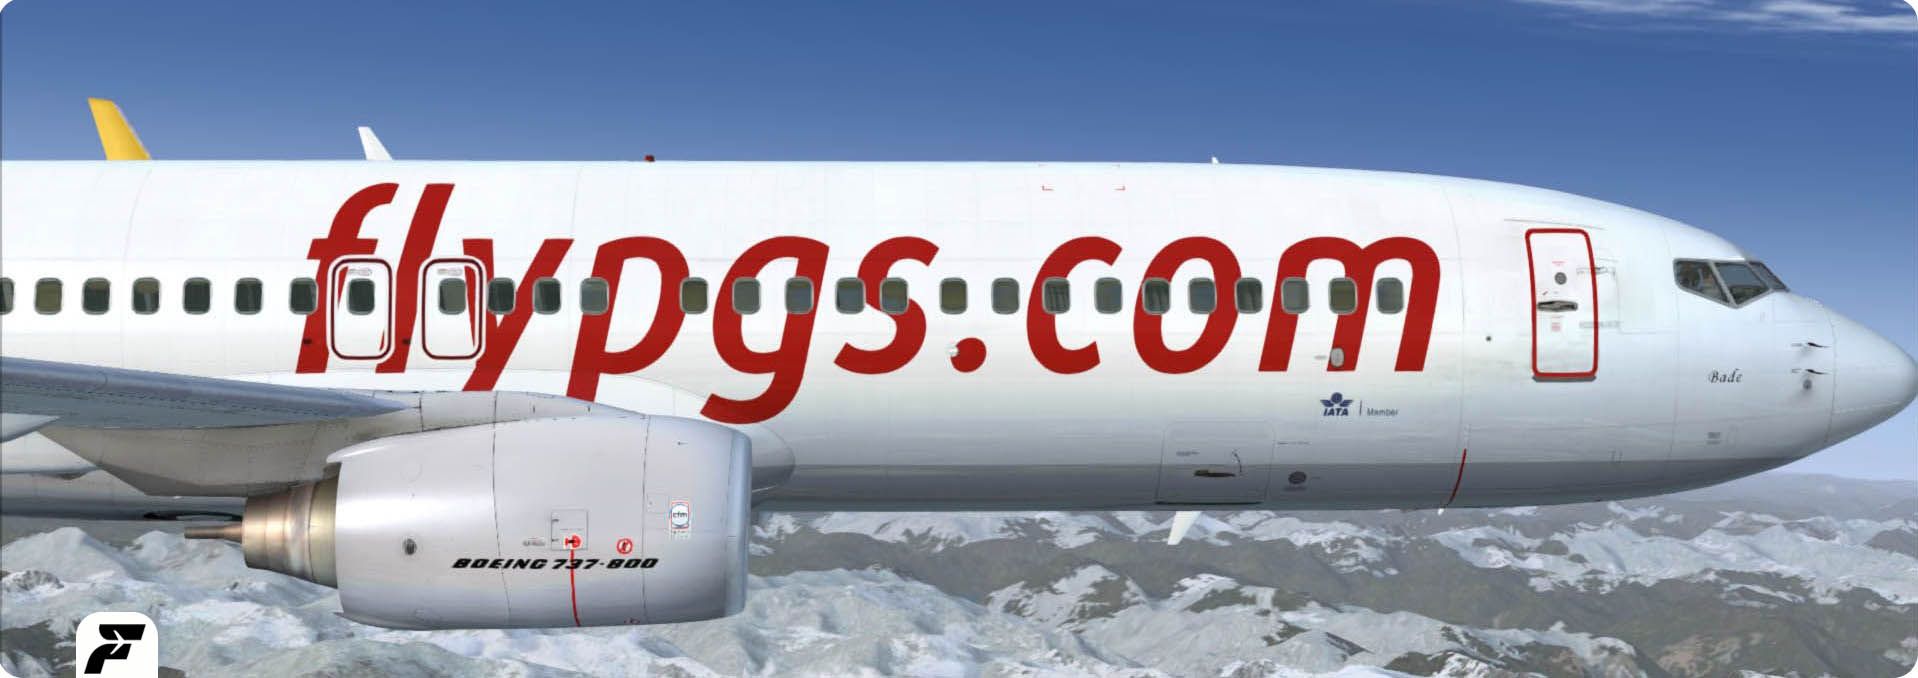 نمایندگی فروش هواپیمایی پگاسوس Pegasus Airlines